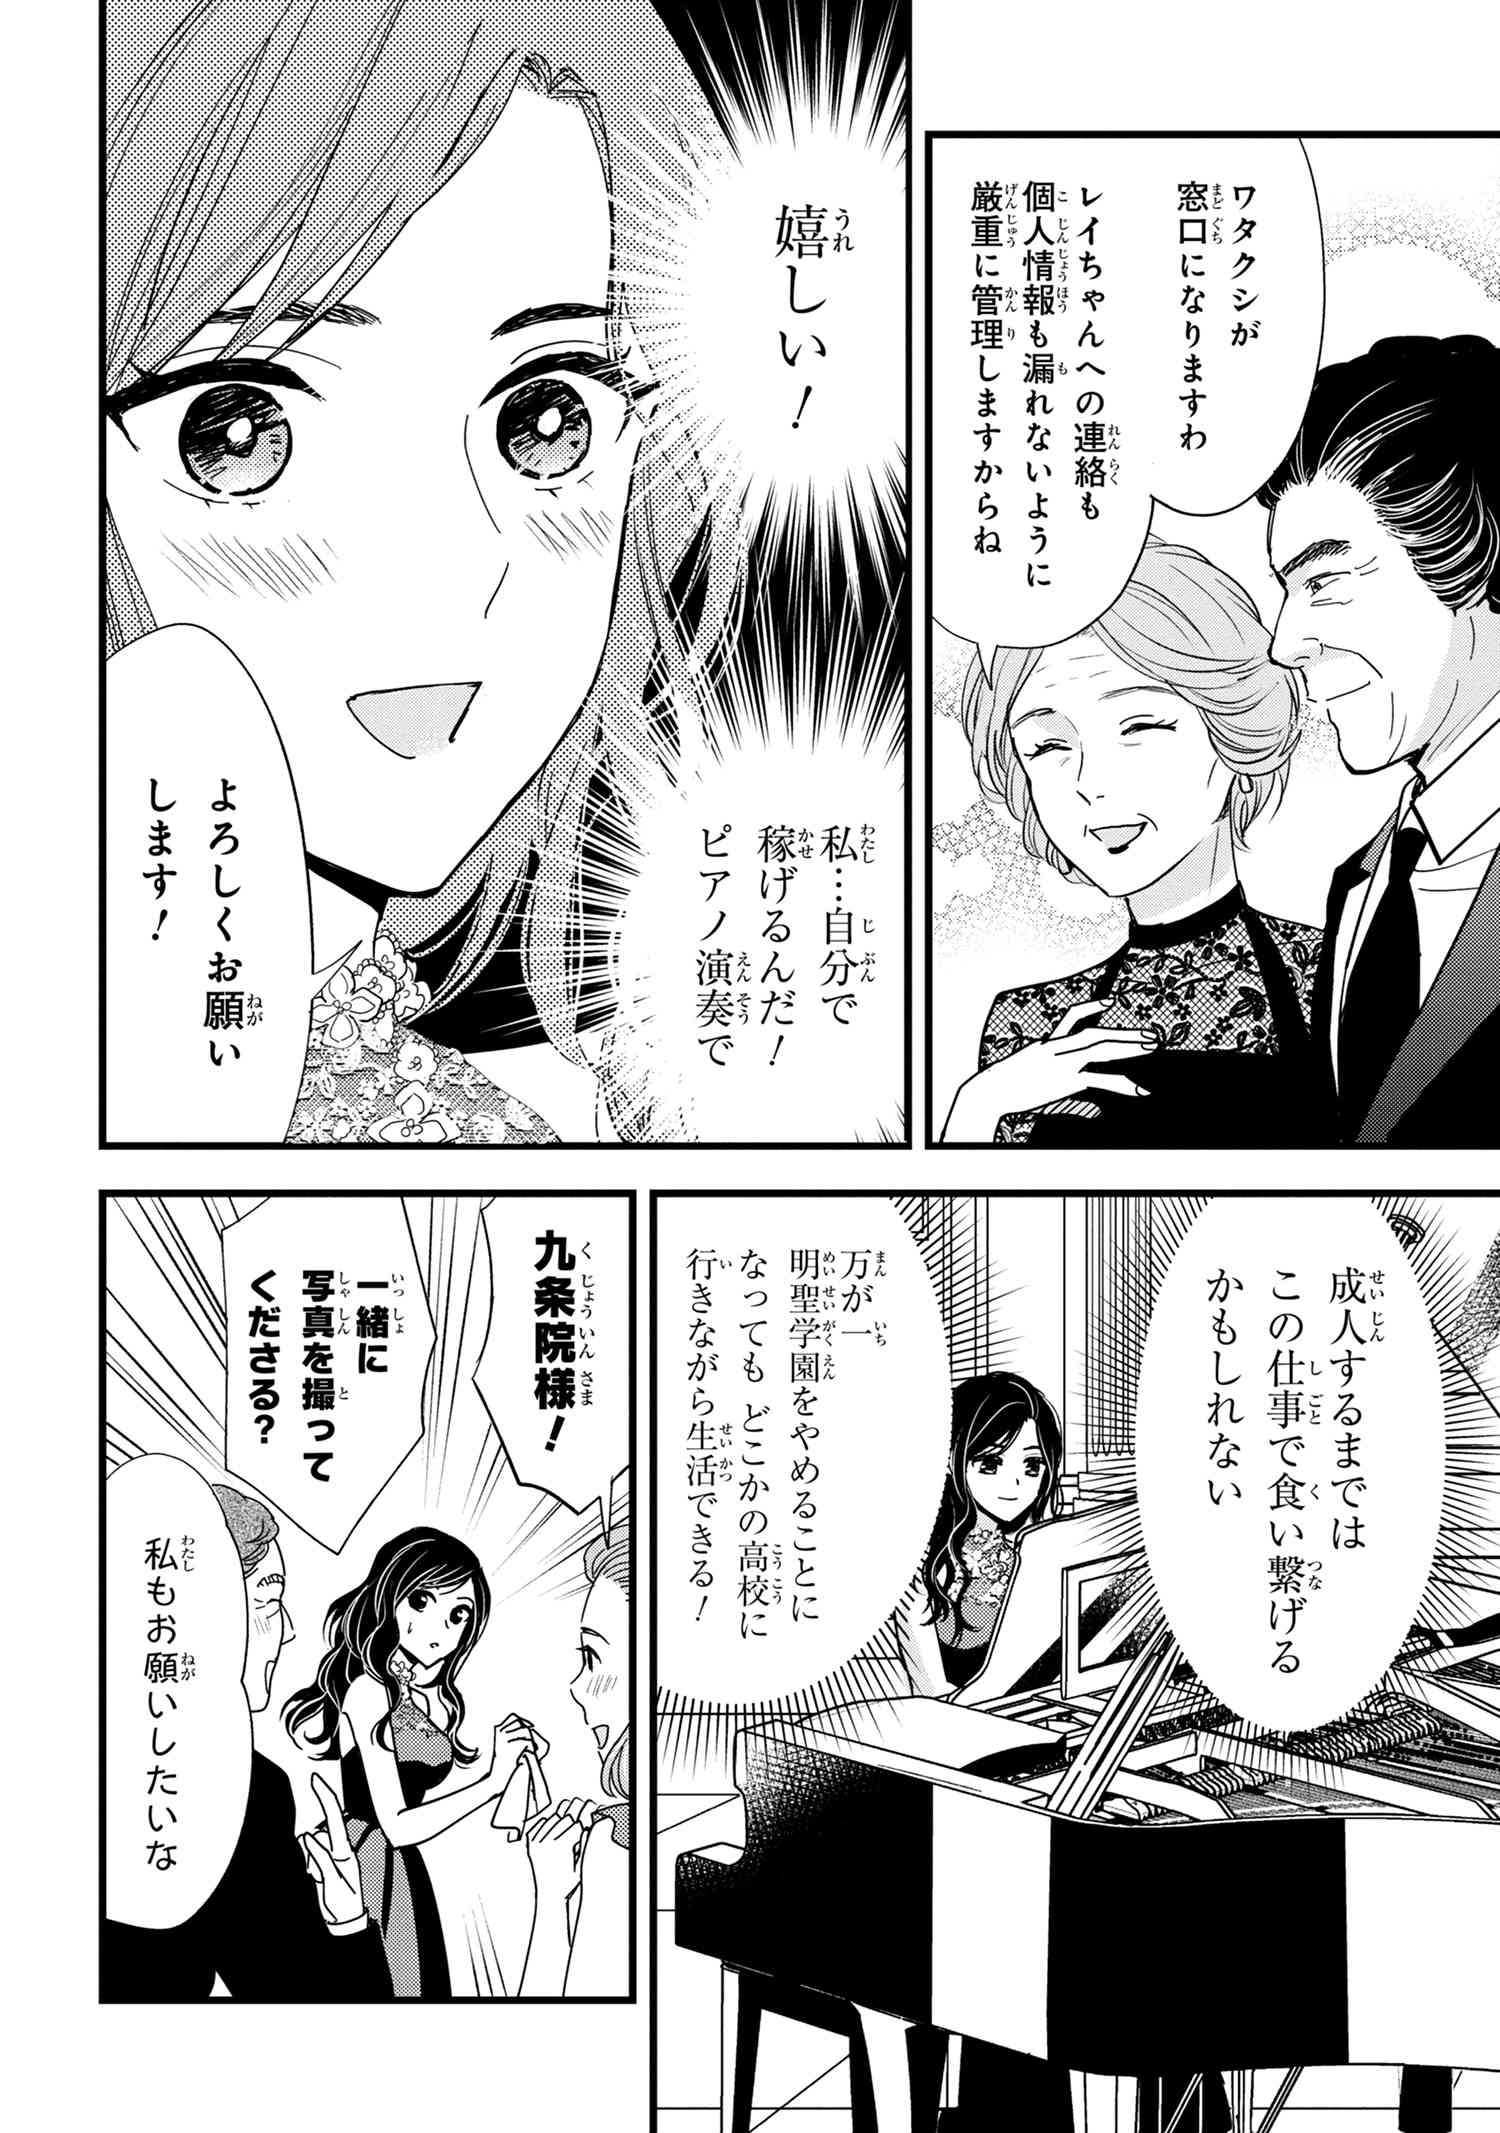 Reiko no Fuugi Akuyaku Reijou to Yobarete imasu ga, tada no Binbou Musume desu - Chapter 14-4 - Page 4